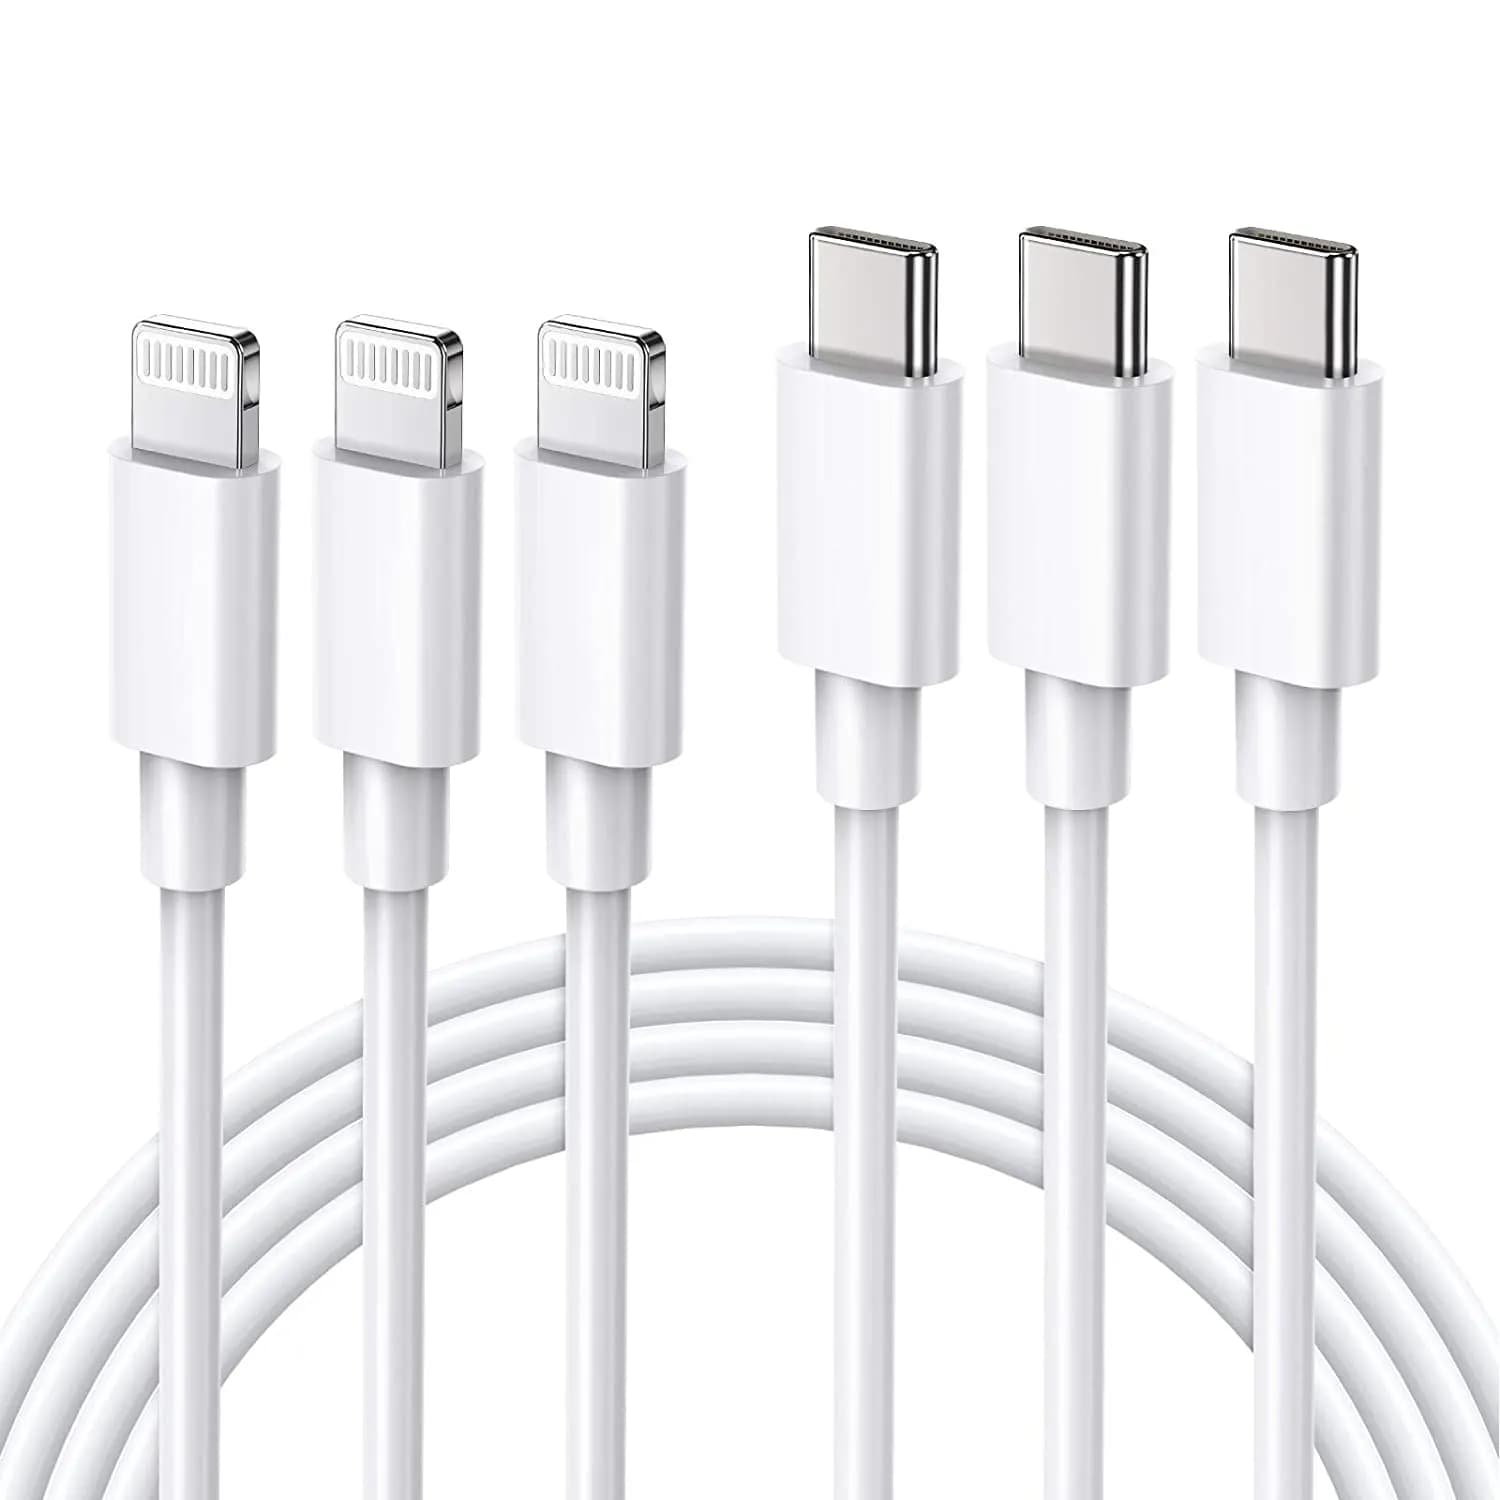 Cable USB Iphone 11 - 12 - 13 Lightning a Tipo C Carga Rápida - Xpress  Online El Salvador